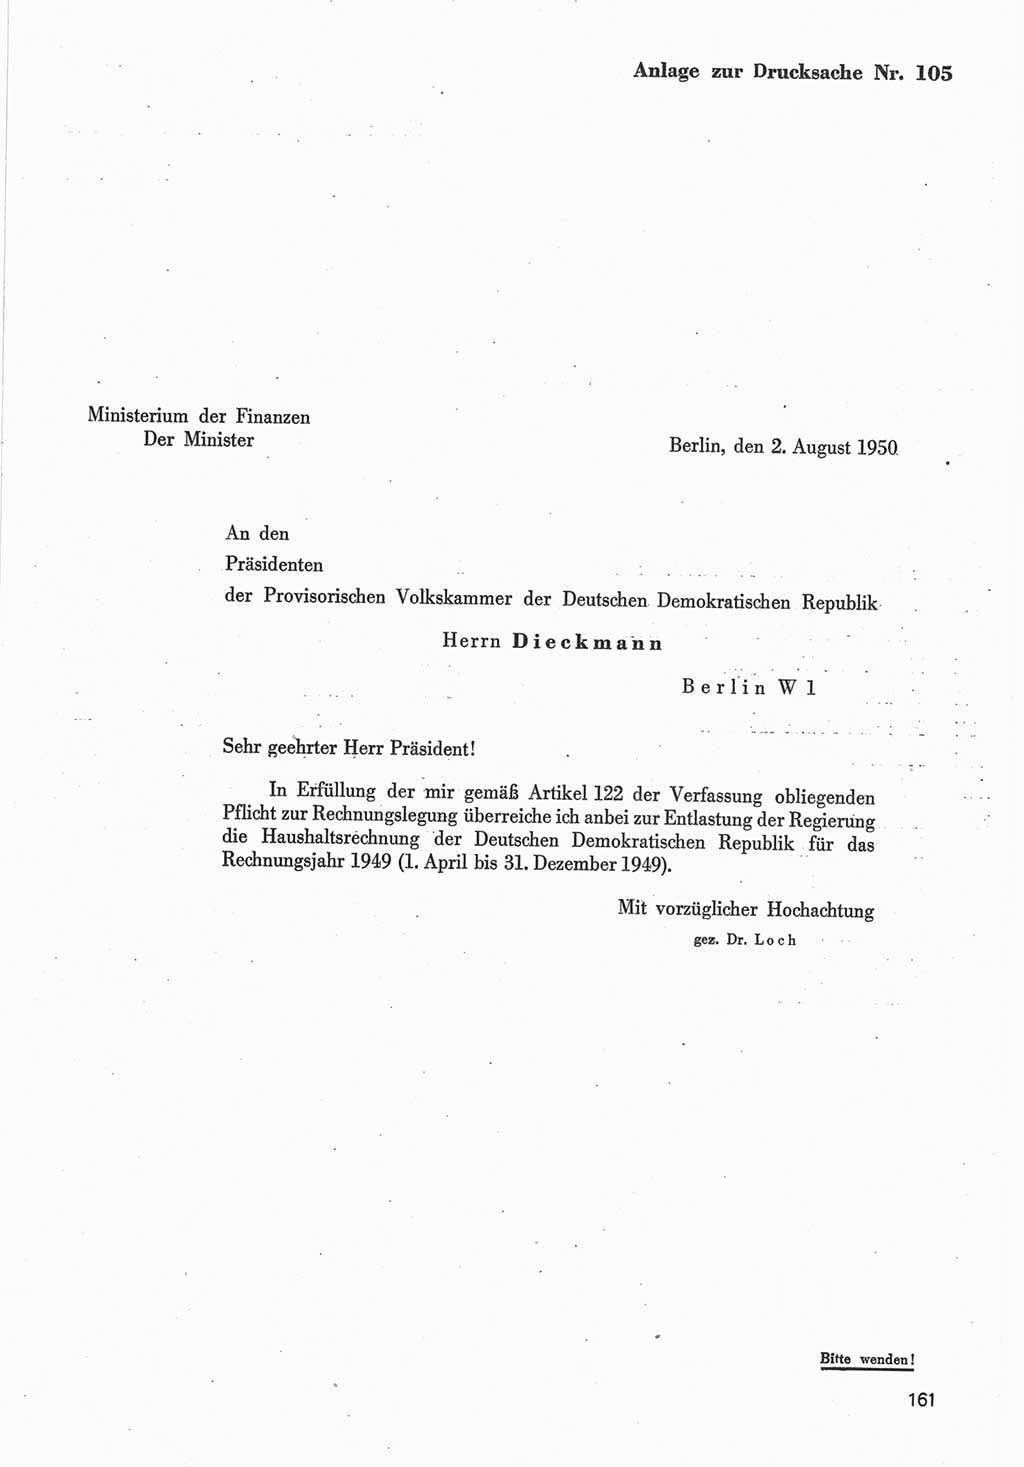 Provisorische Volkskammer (VK) der Deutschen Demokratischen Republik (DDR) 1949-1950, Dokument 763 (Prov. VK DDR 1949-1950, Dok. 763)